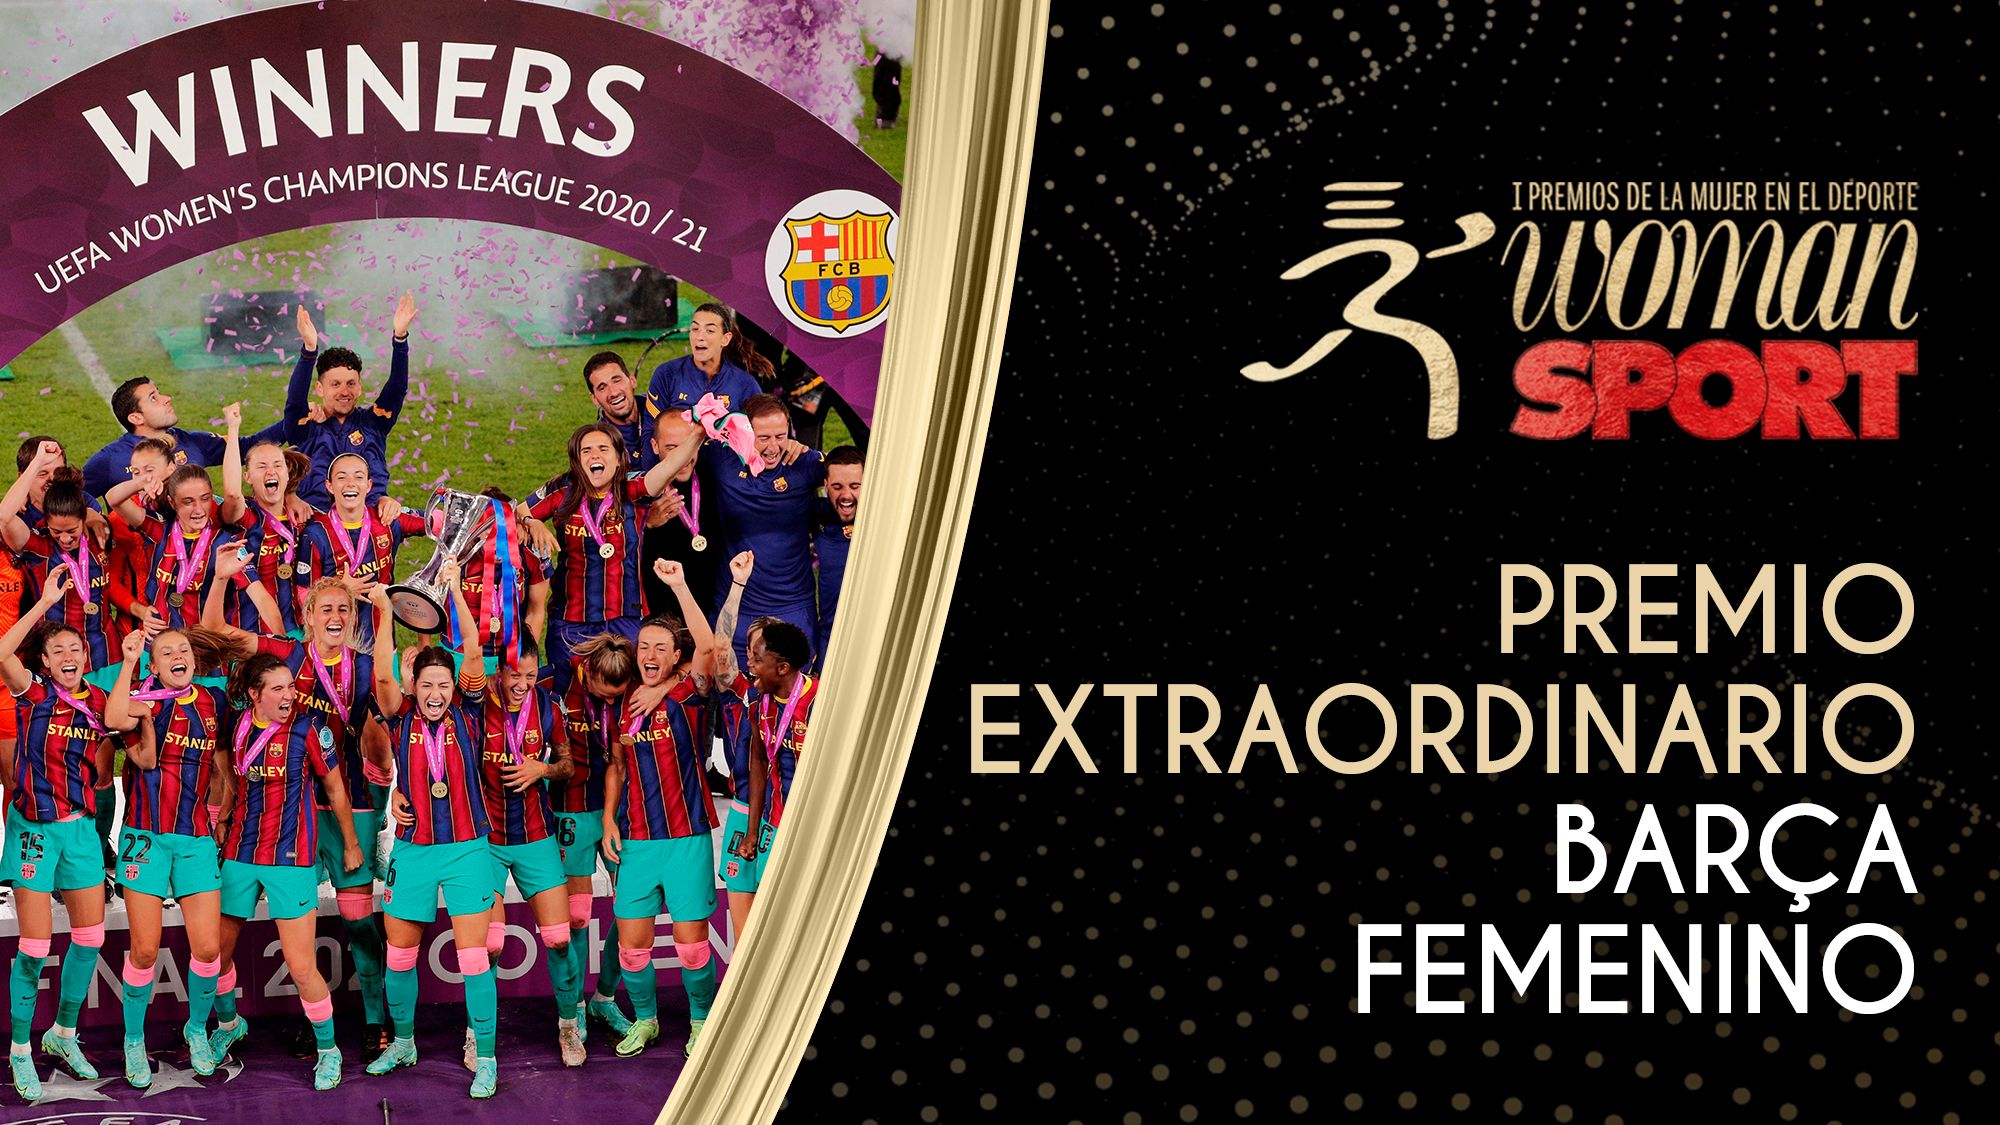 El Barça femenino, ganador del Premio Extraordinario de Woman y Sport